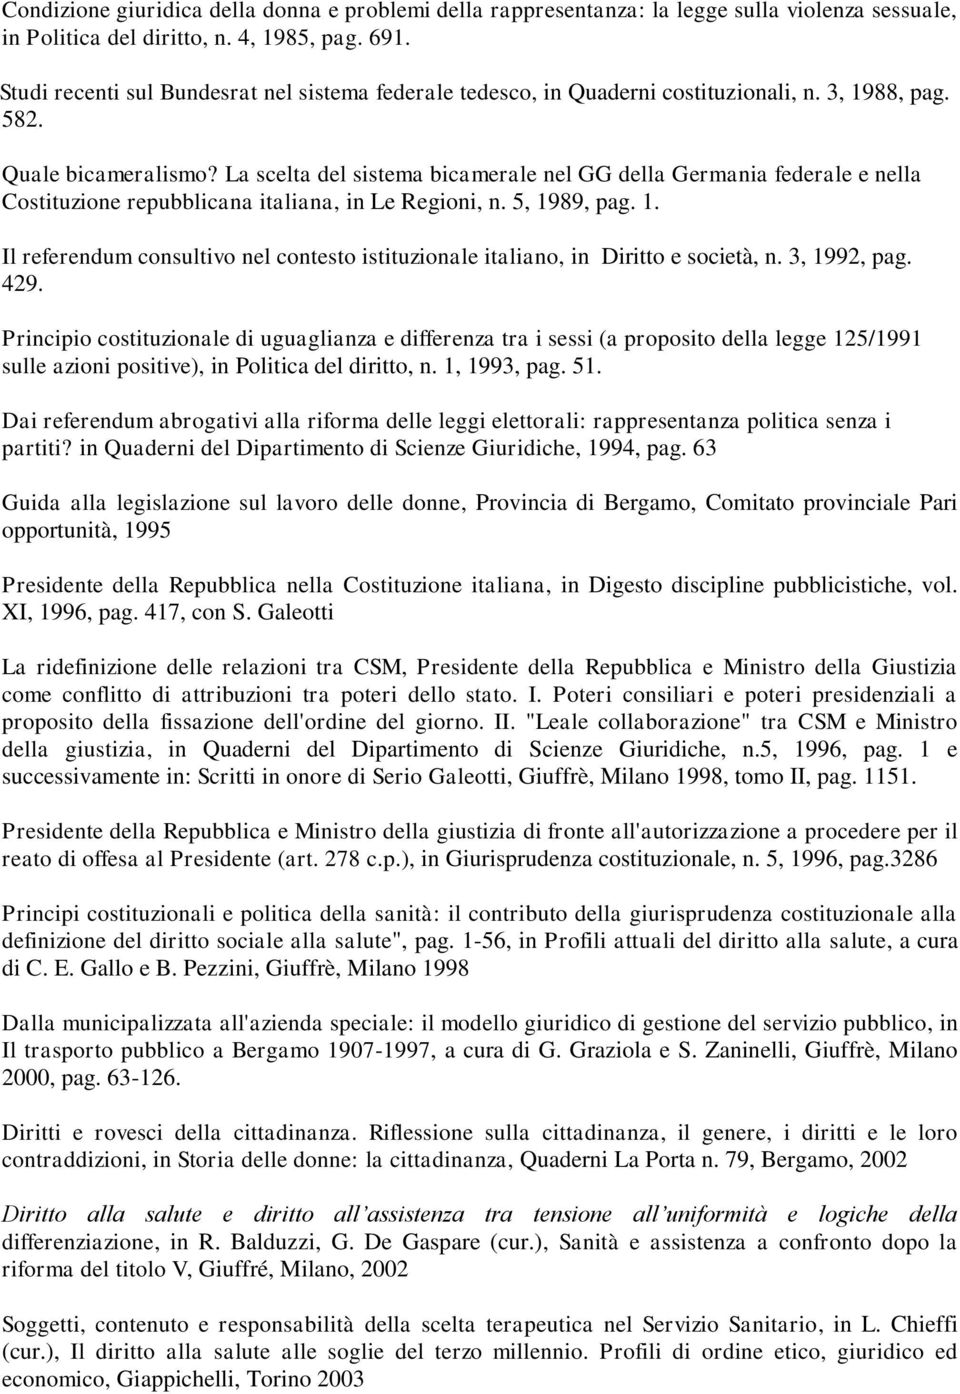 La scelta del sistema bicamerale nel GG della Germania federale e nella Costituzione repubblicana italiana, in Le Regioni, n. 5, 19